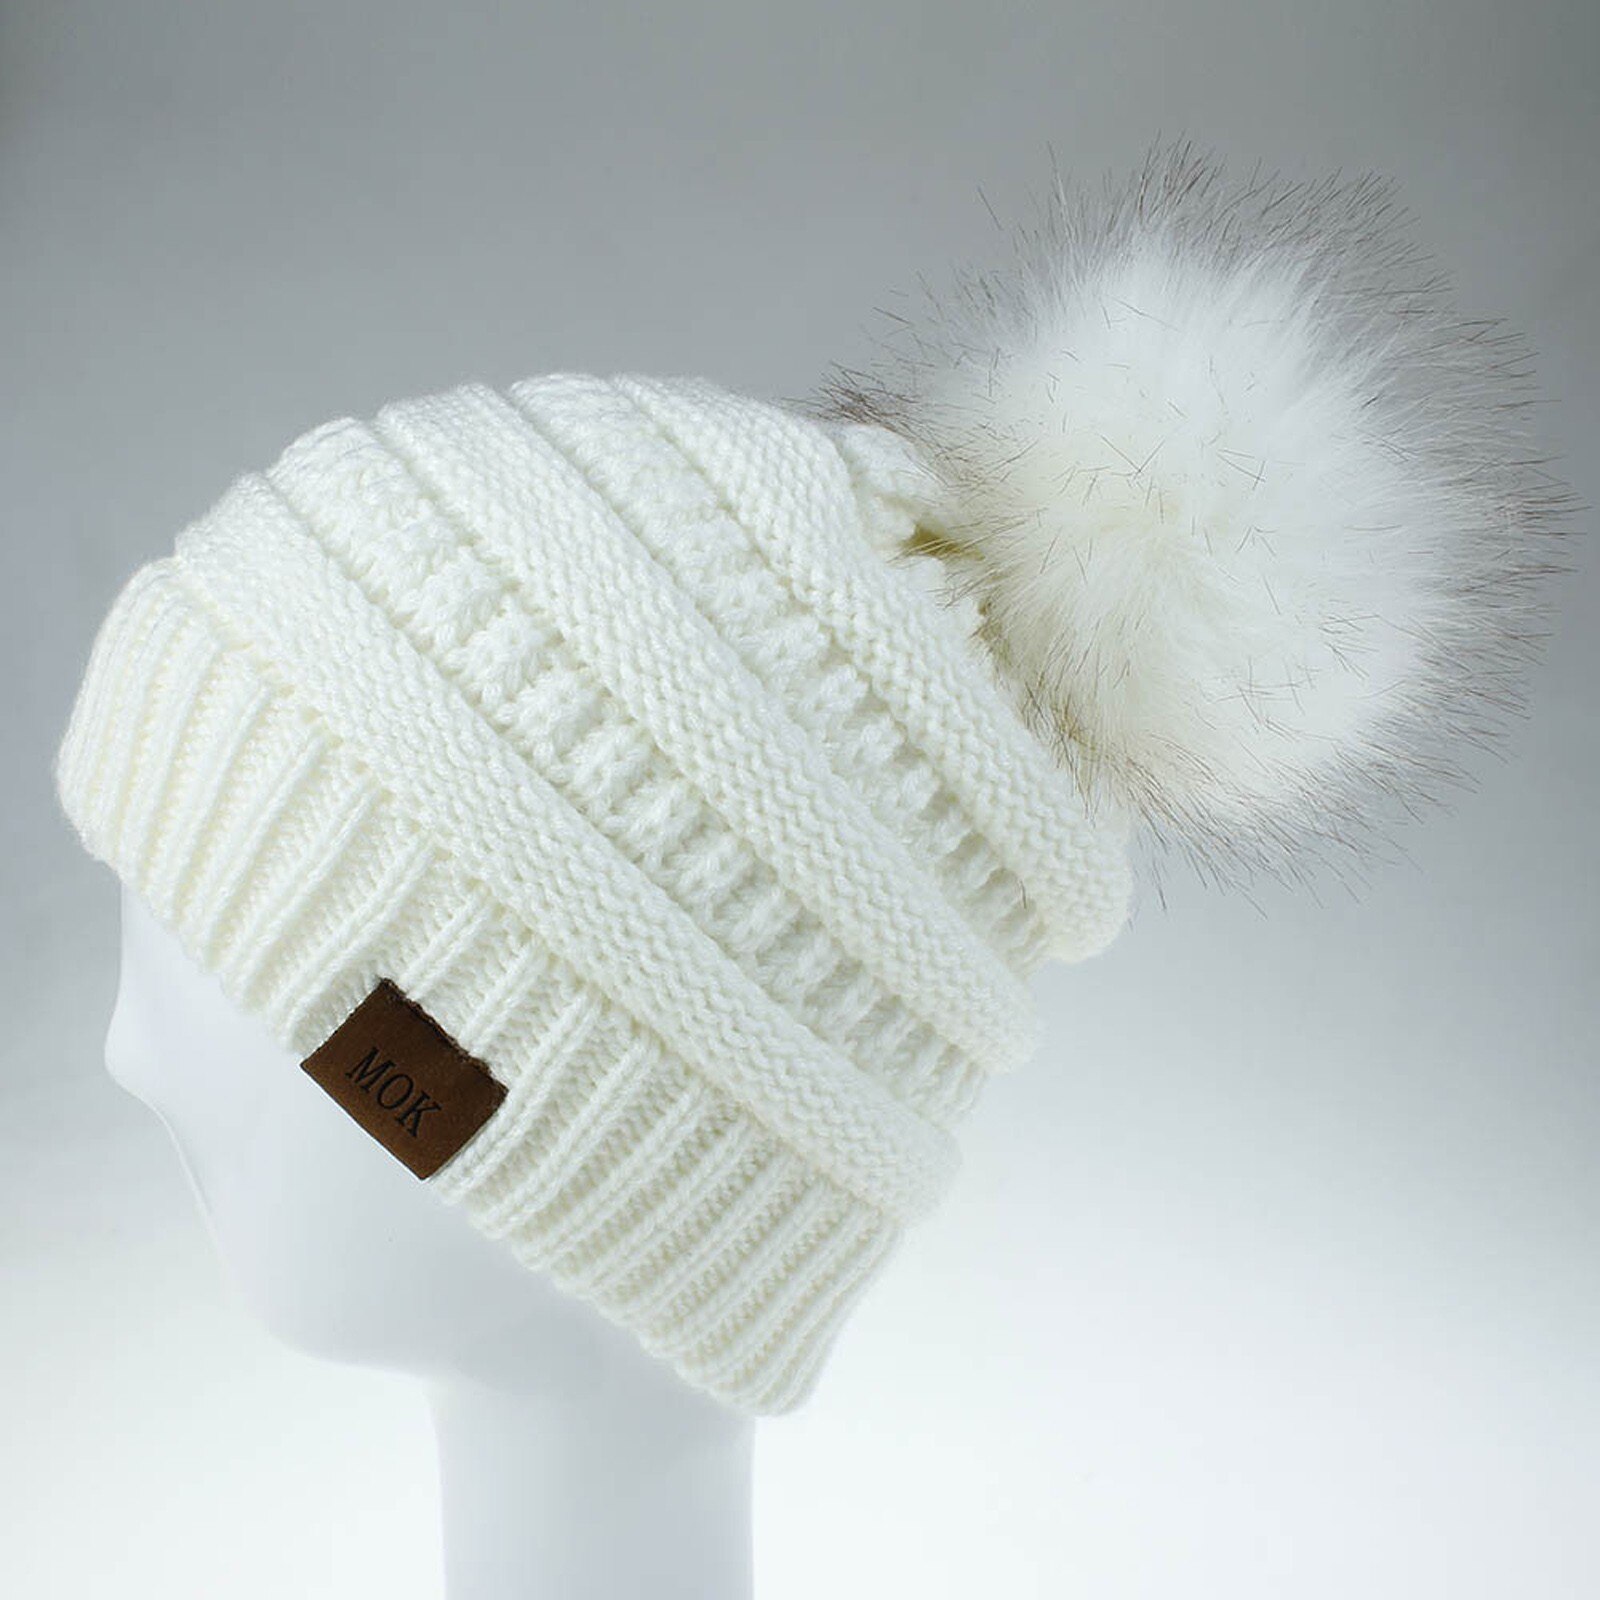 E la moda donna nuova E di alta qualità mantiene caldi cappelli invernali cappello a orlo in lana lavorato a maglia morbido delicato sulla pelle, traspirante: WH